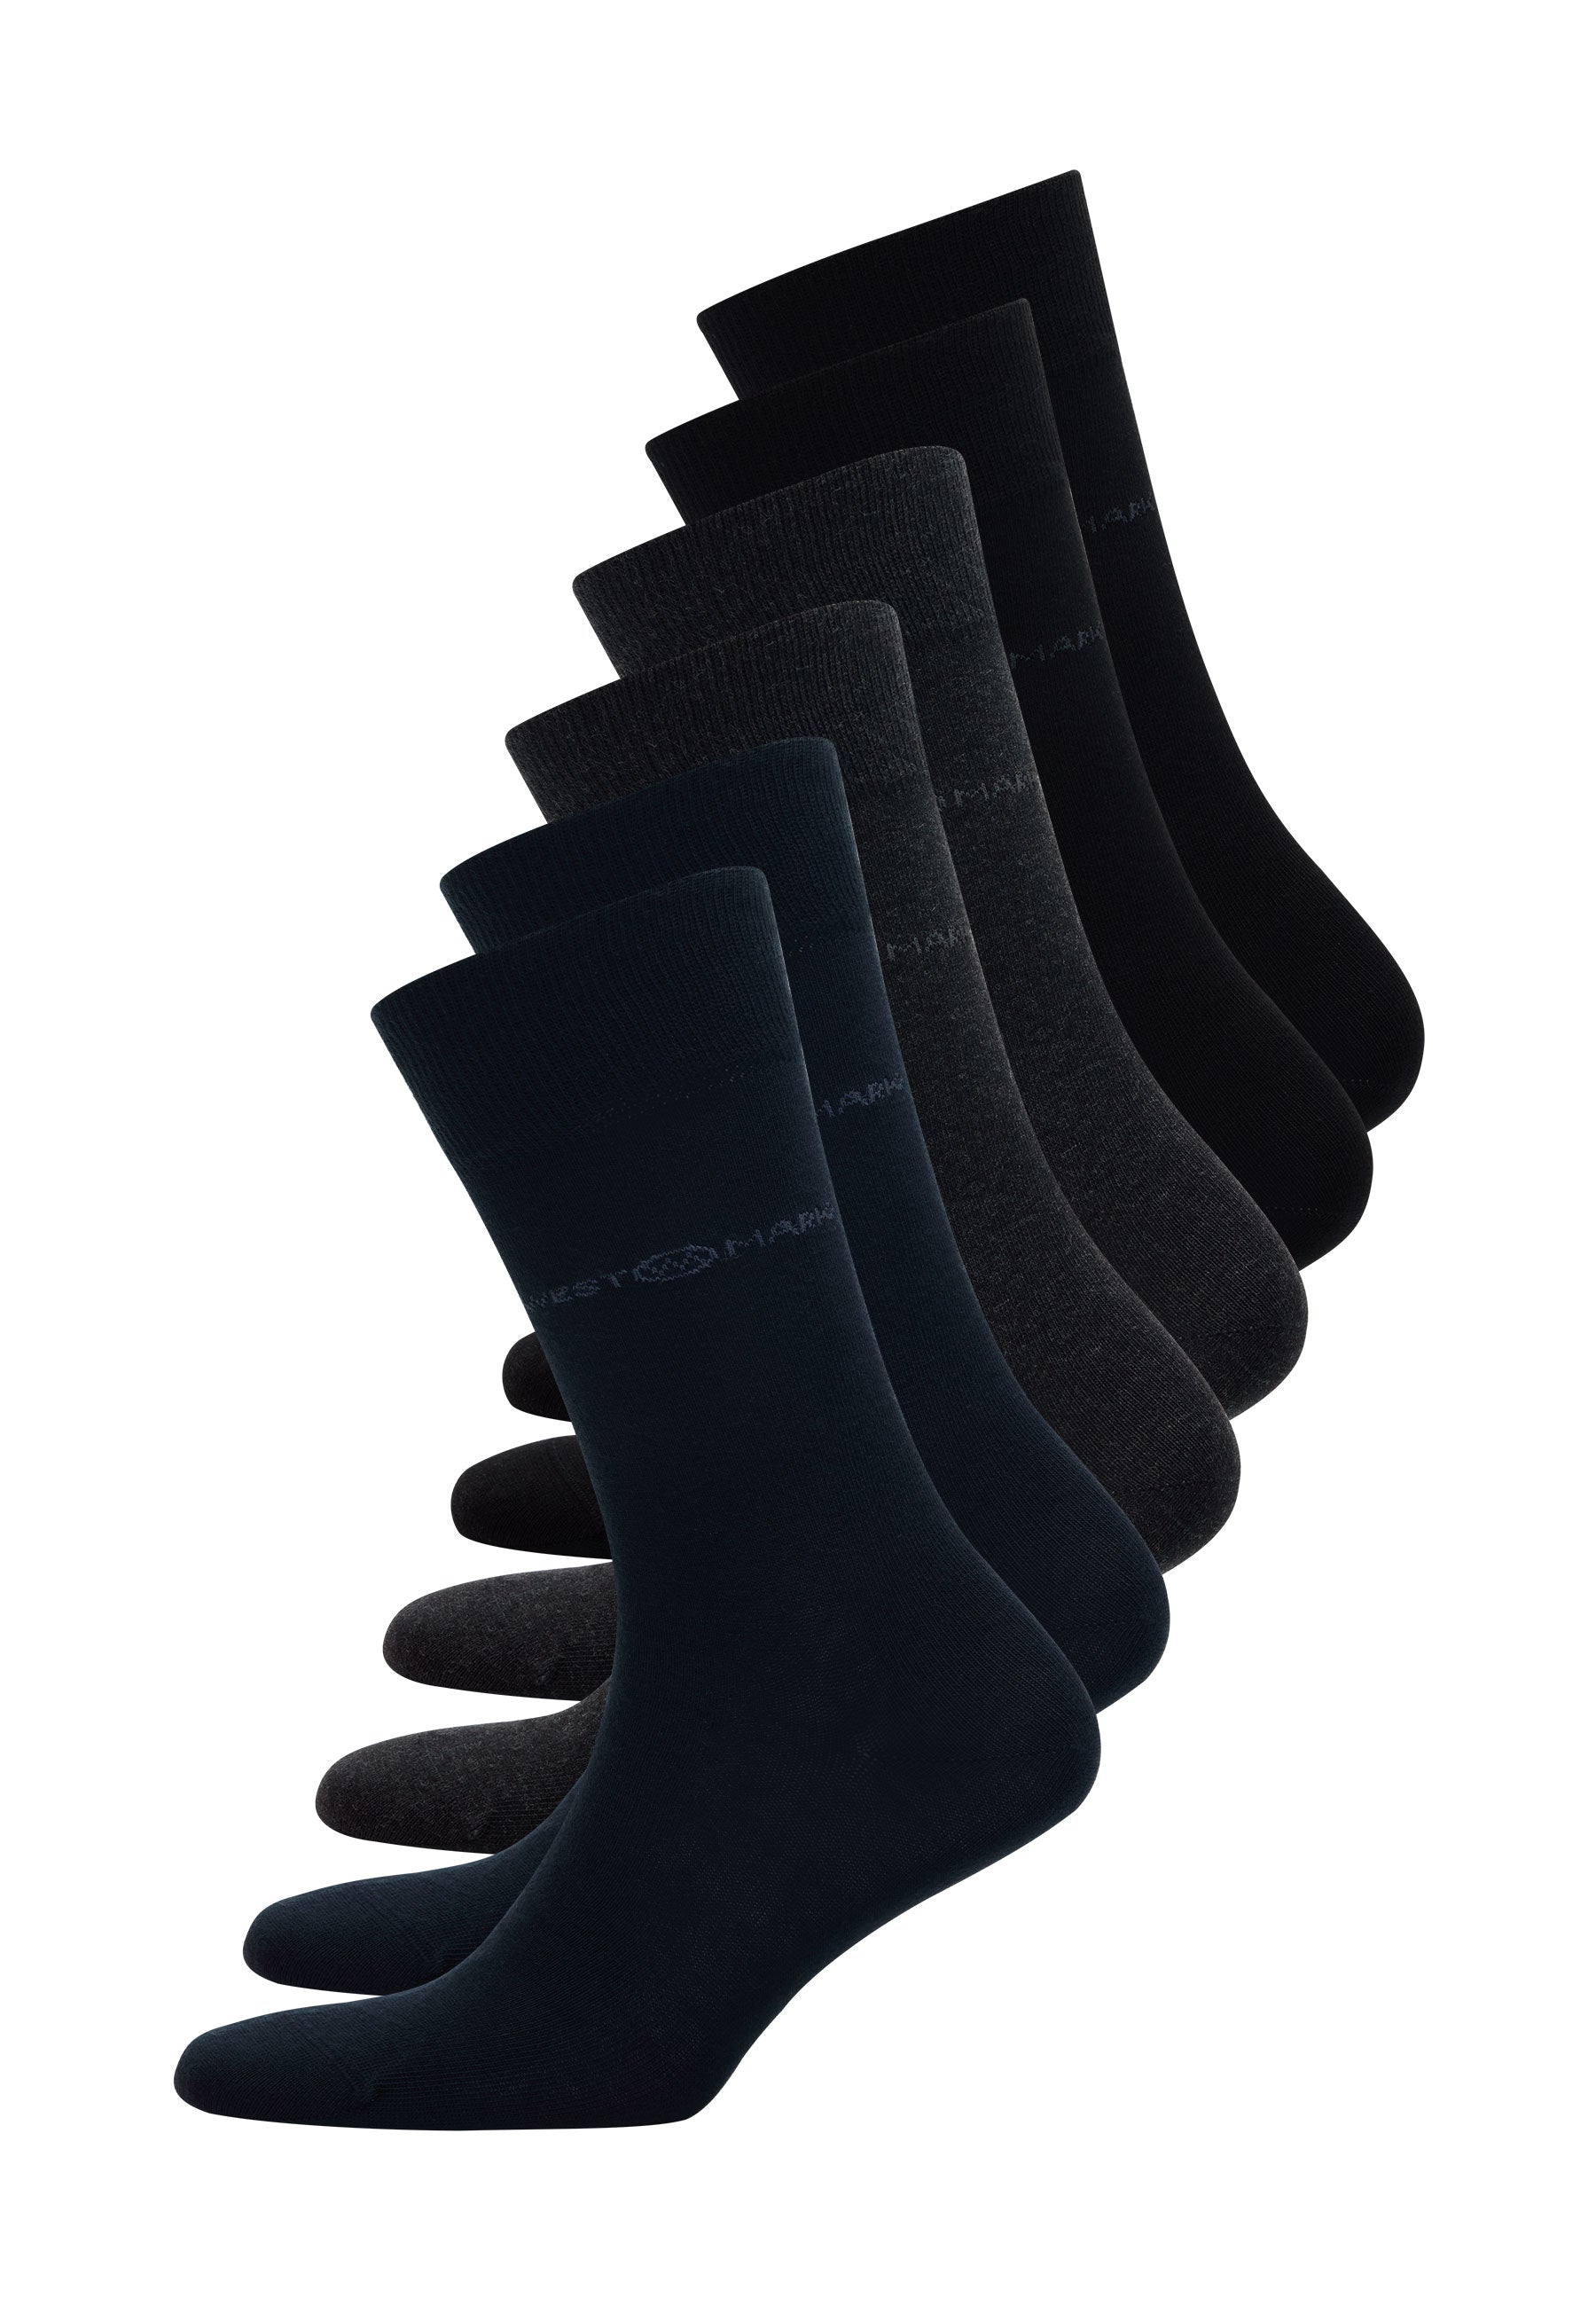 6’lı Siyah Lacivert Antrasit Pamuk Karışımlı Klasik Erkek Çorap Seti CLASSIC BUSINESS - Socks - Westmark London EU(TR) Store Organik Pamuklu Sürdürülebilir Moda